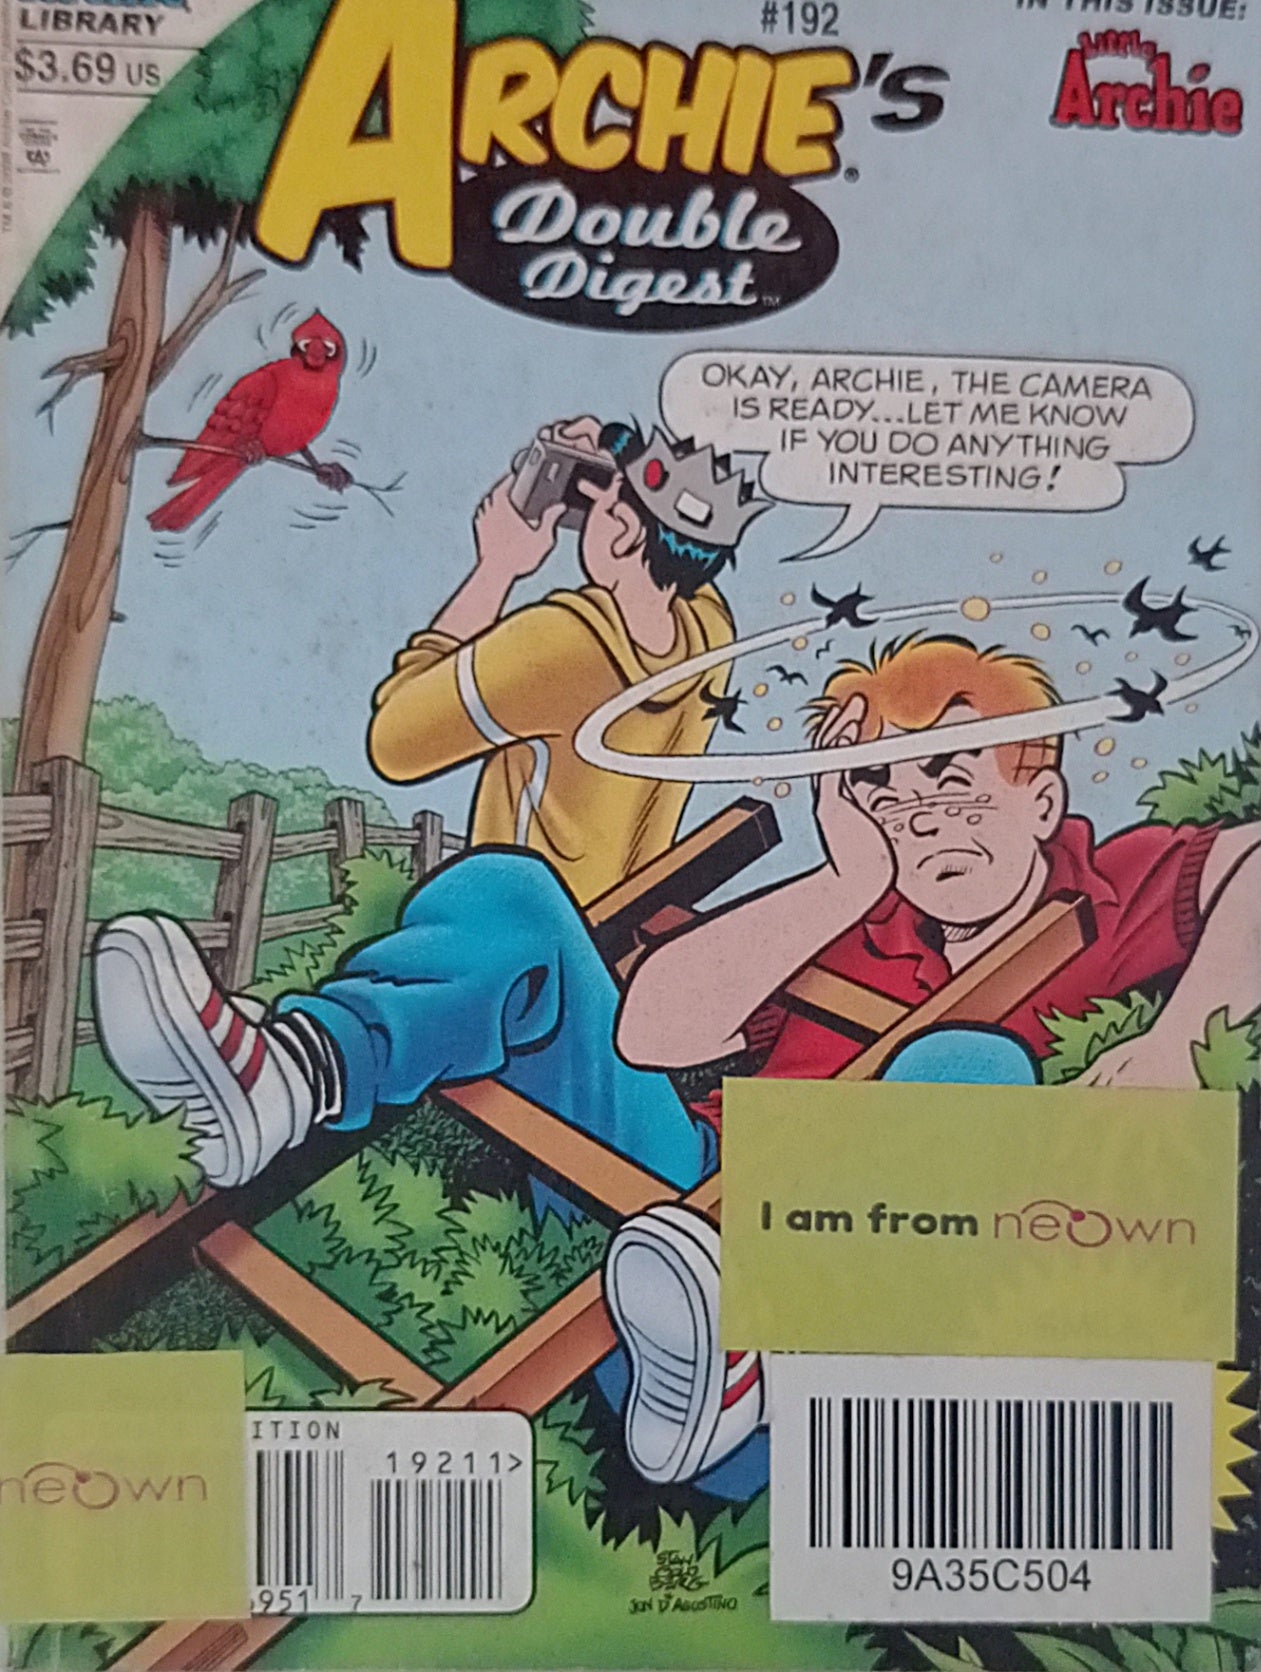 Archie's Double Digest No.192